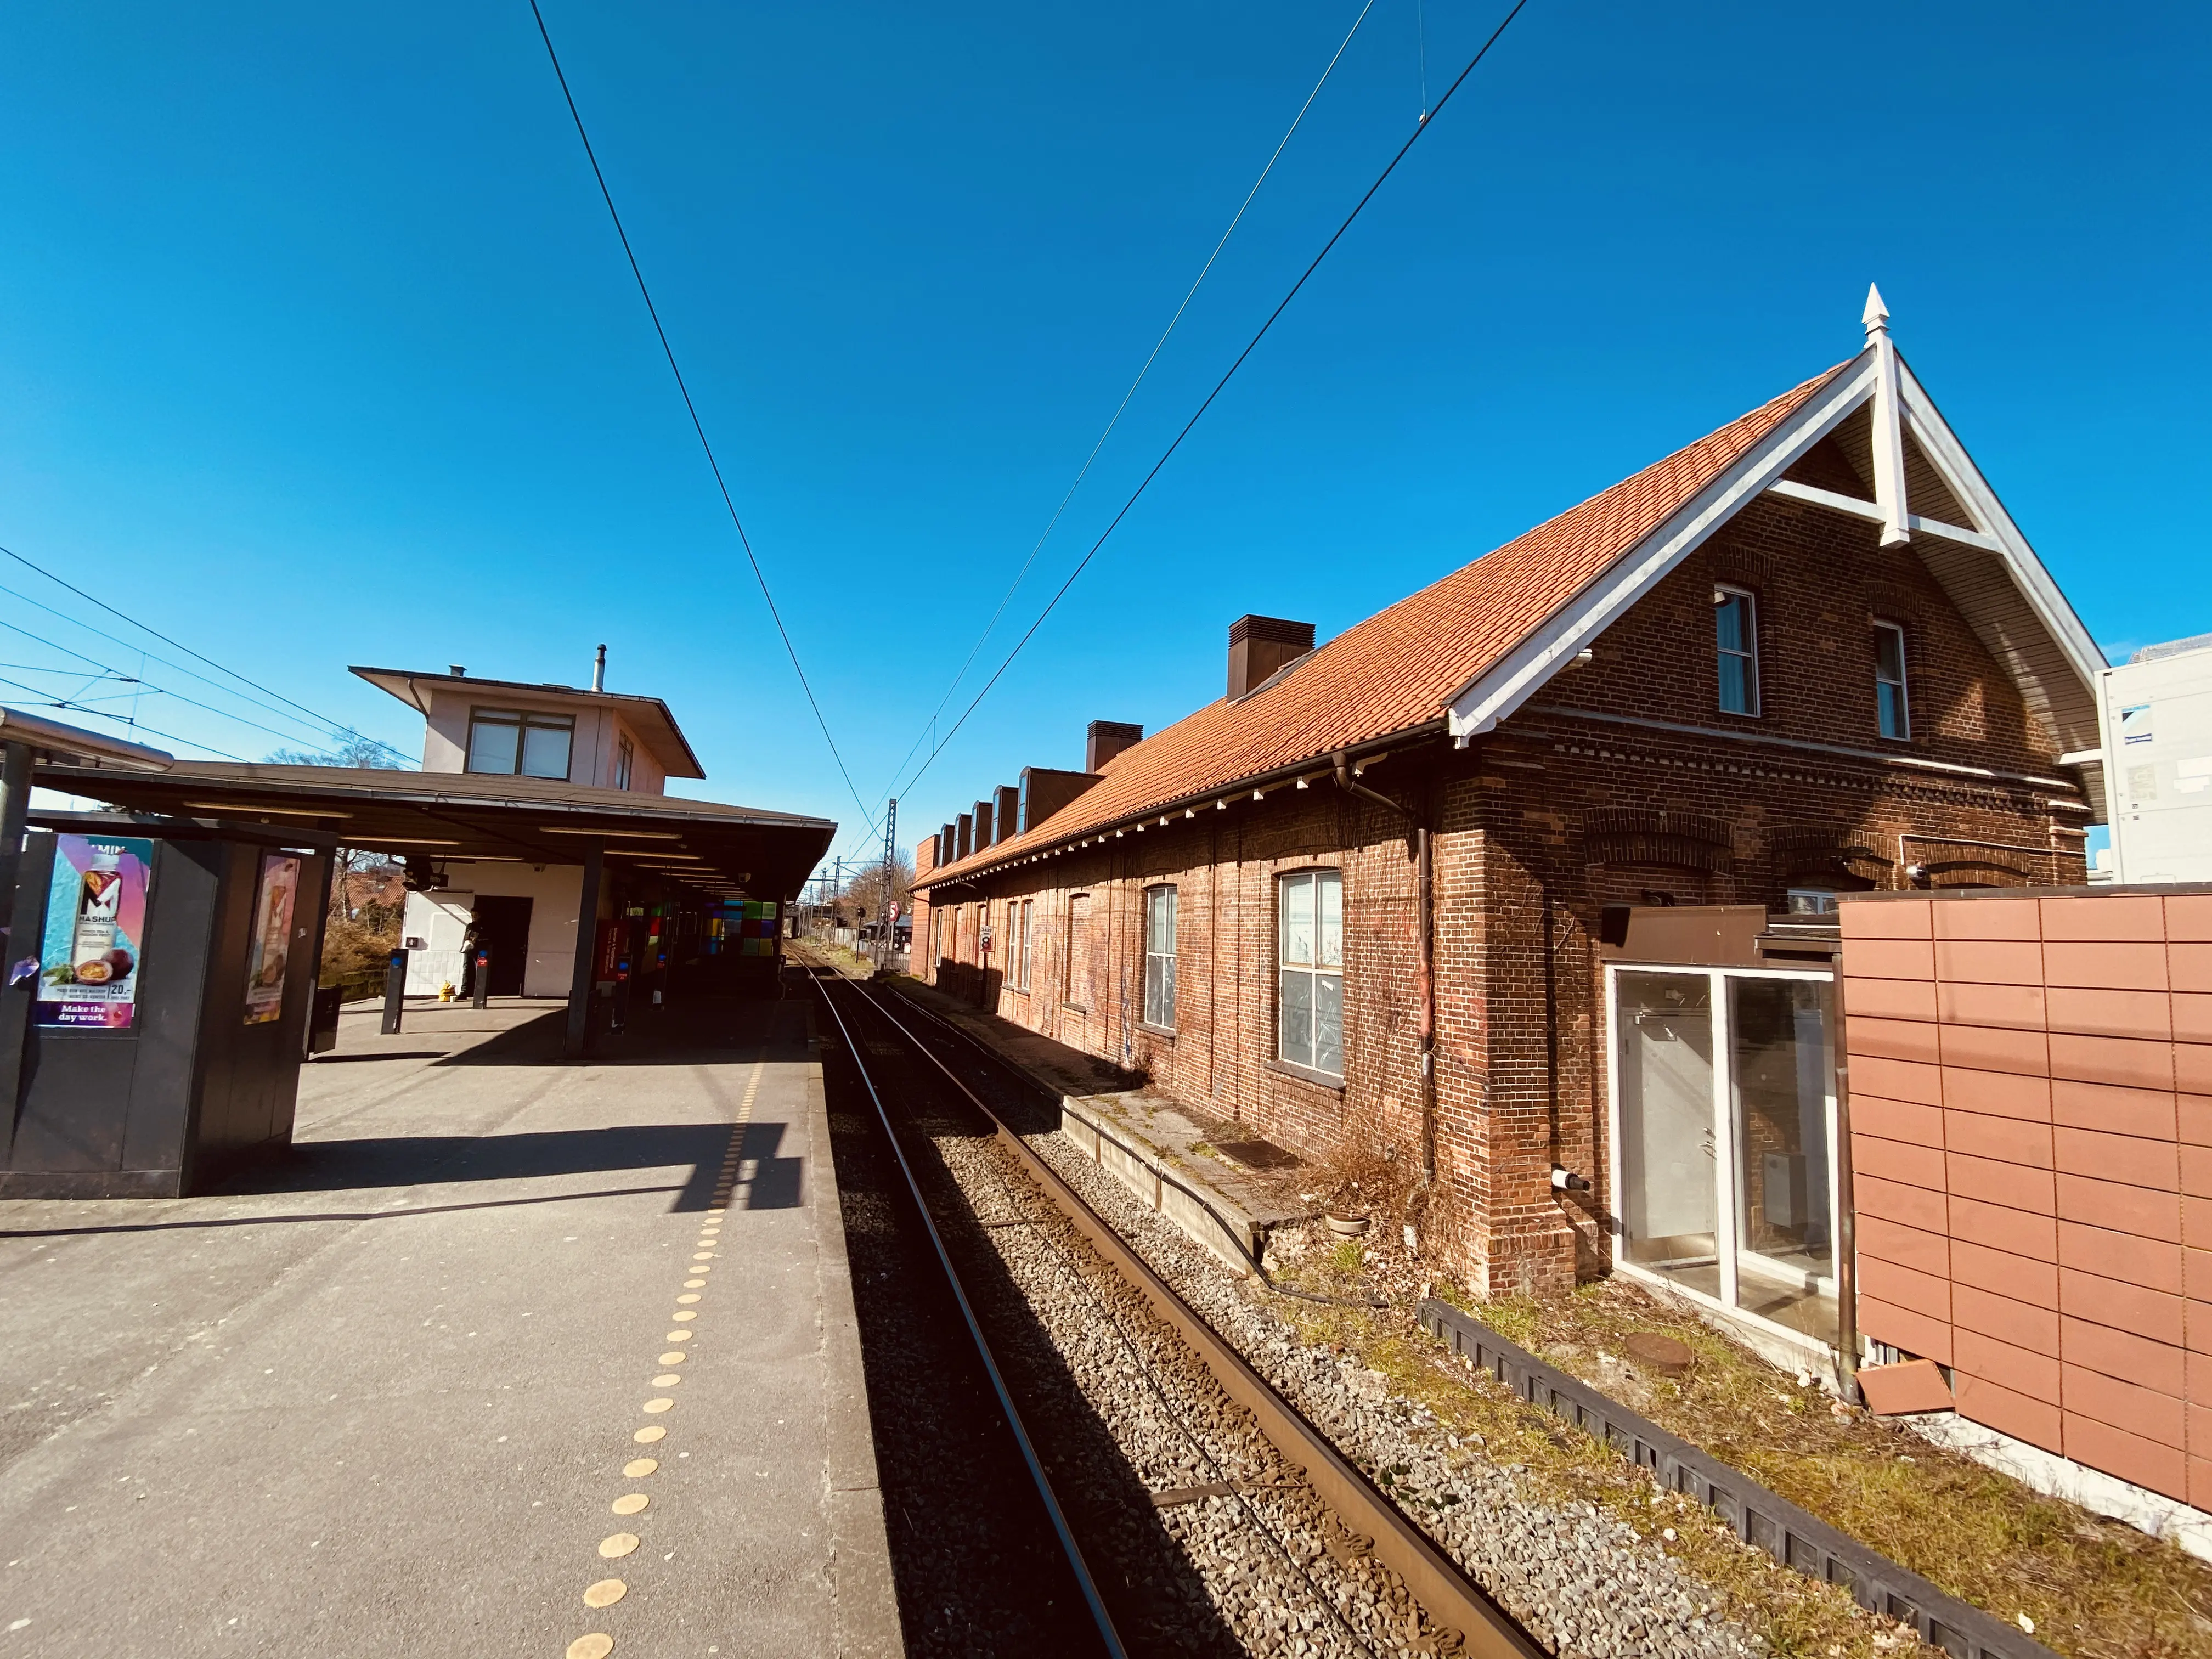 Herlev Station.